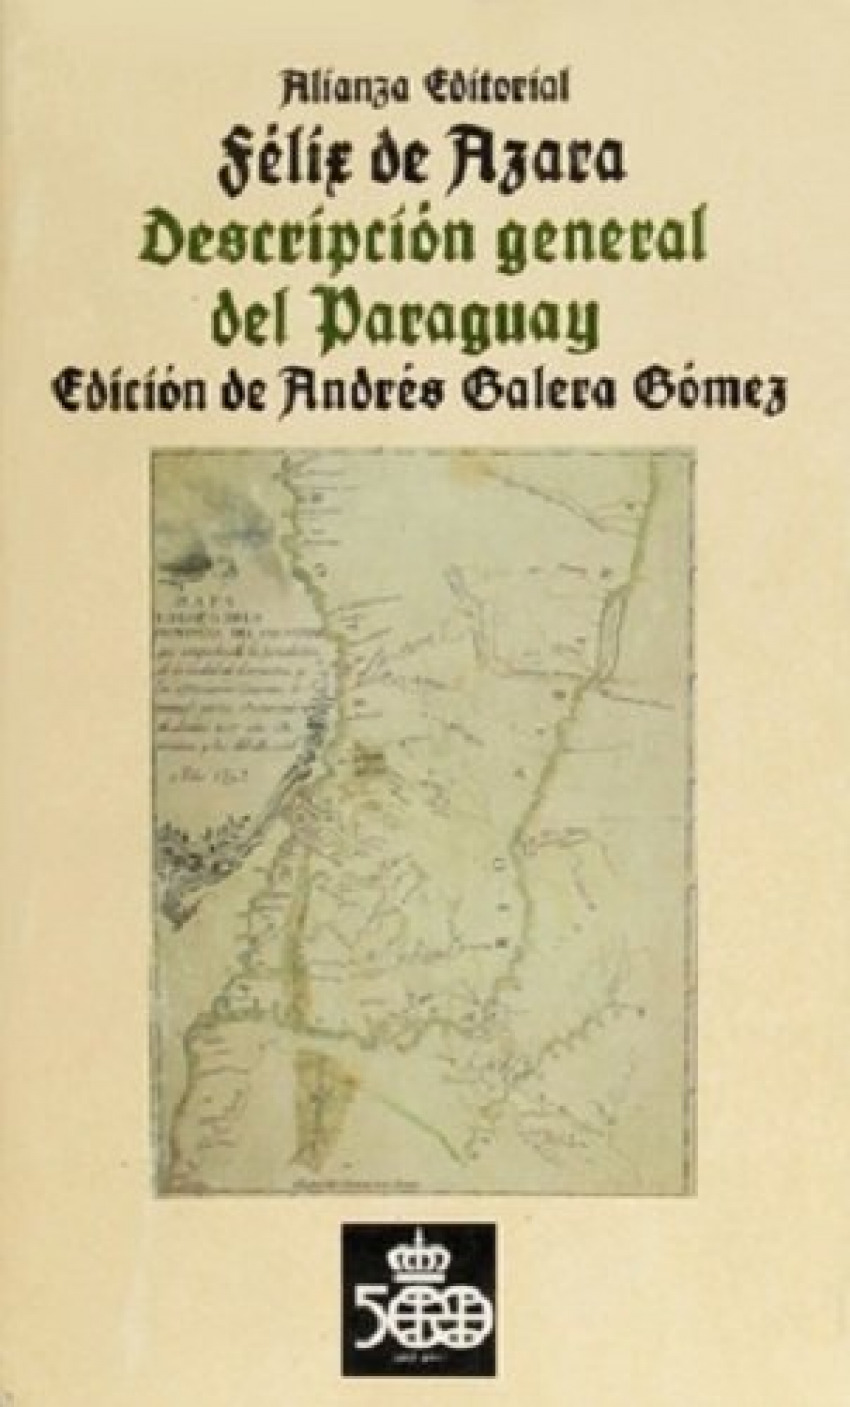 Descripcion general de paraguay - Azara, Felix De